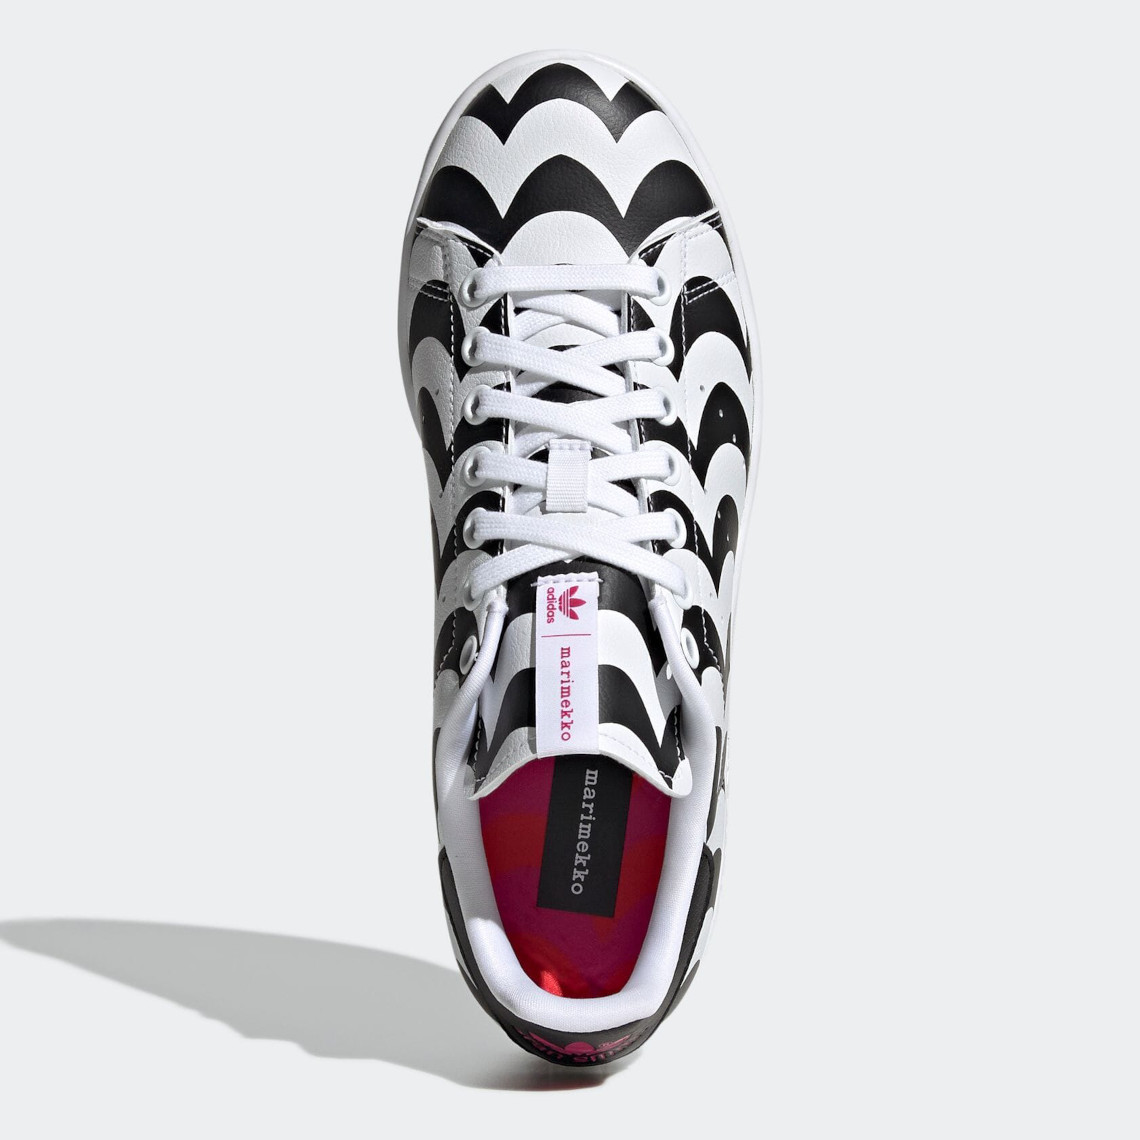 Marimekko adidas Spring 2021 Collection Release | SneakerNews.com